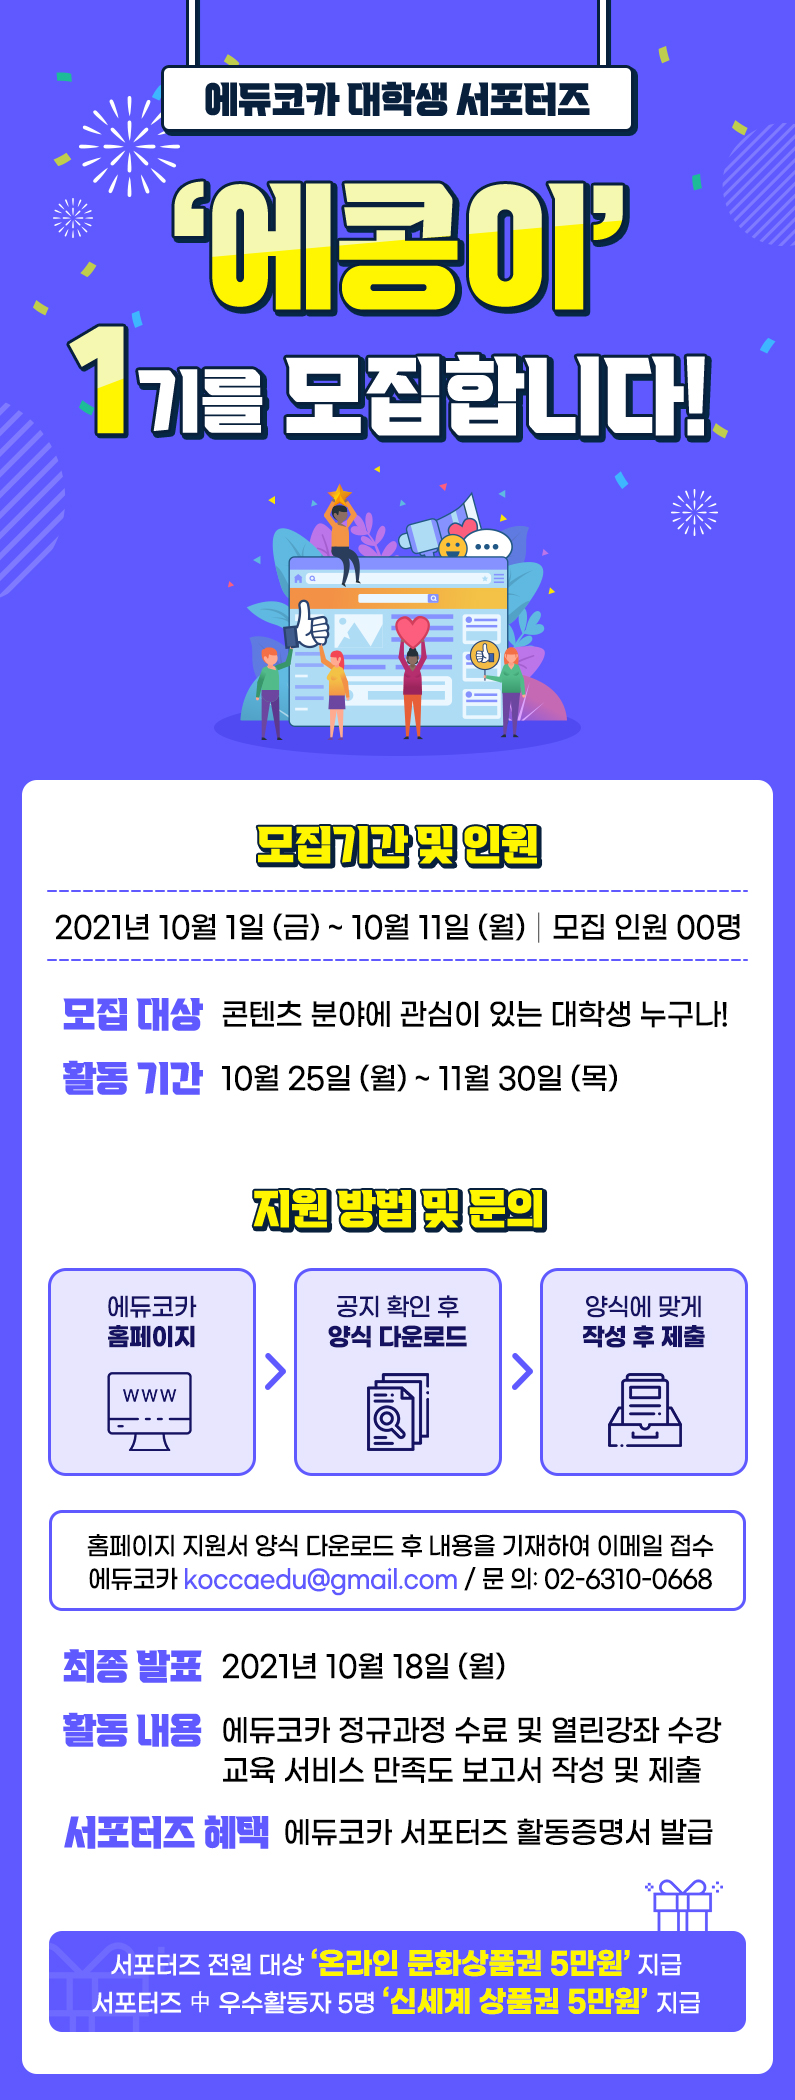 에듀코카 서포터즈 '에콩이' 1기 모집 기간: 10/1(금)~10/11(월)까지 모집 인원: 00명 